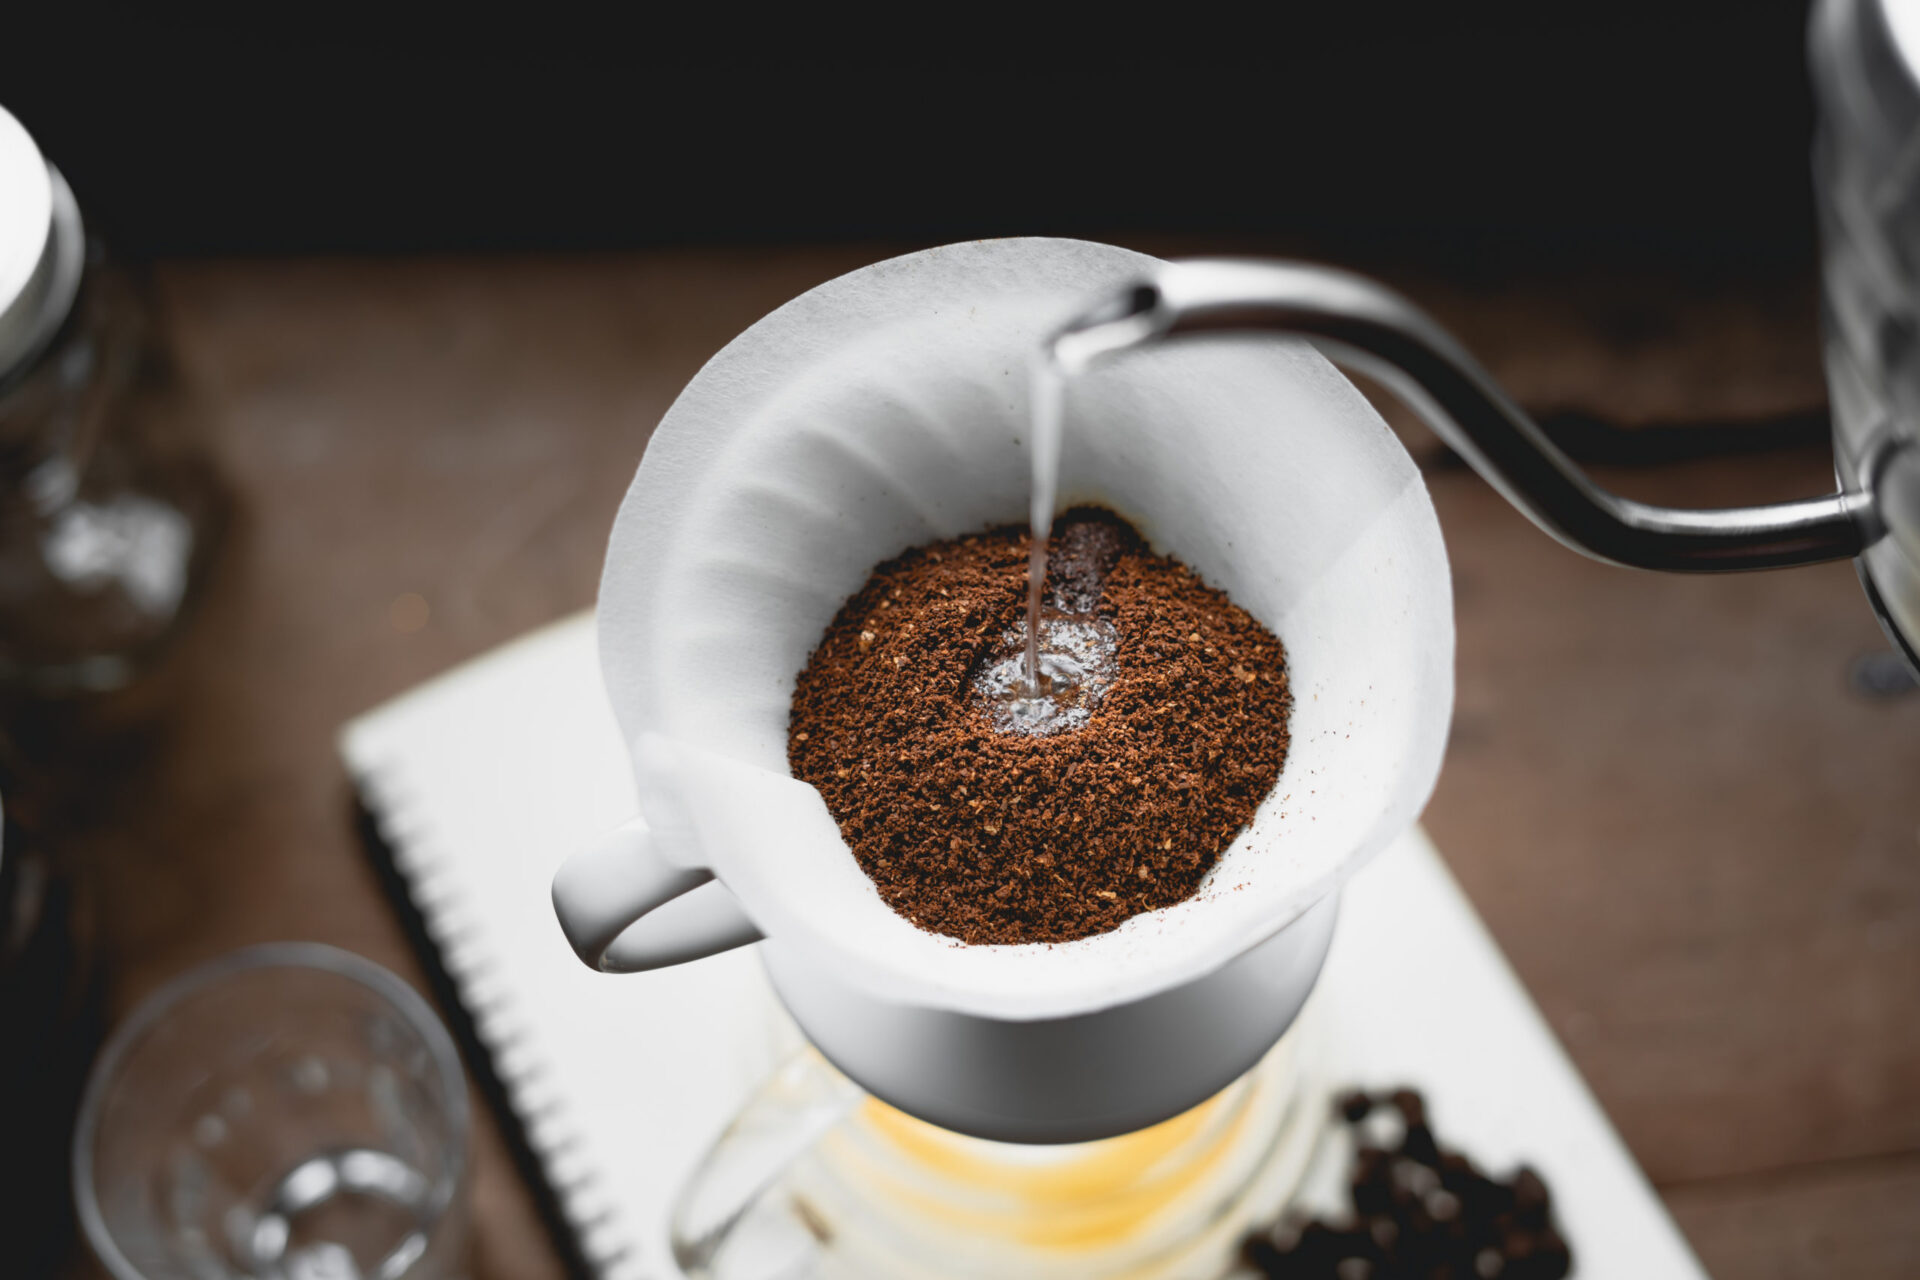 Filtro de café branco e filtro de café natural: Qual a diferença? - Baristo  Café